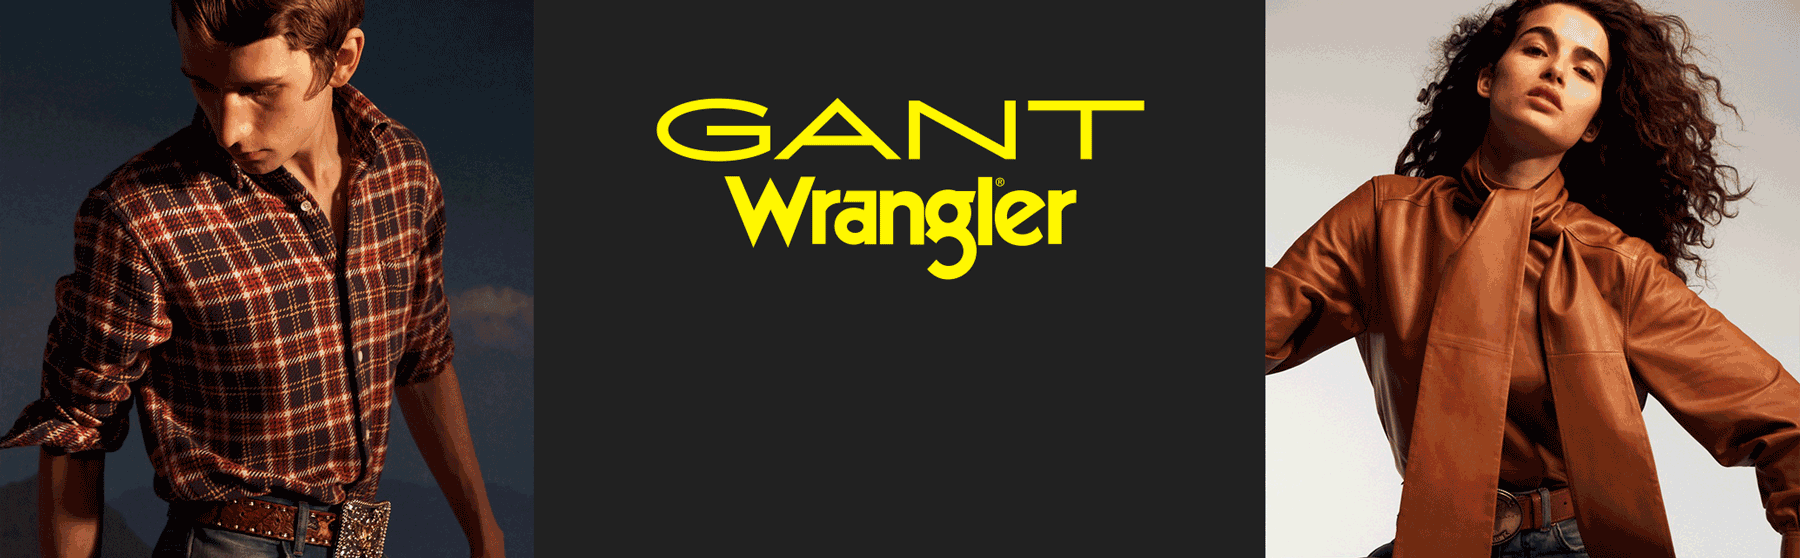 GANT x Wrangler Starring Nadia Lee Cohen